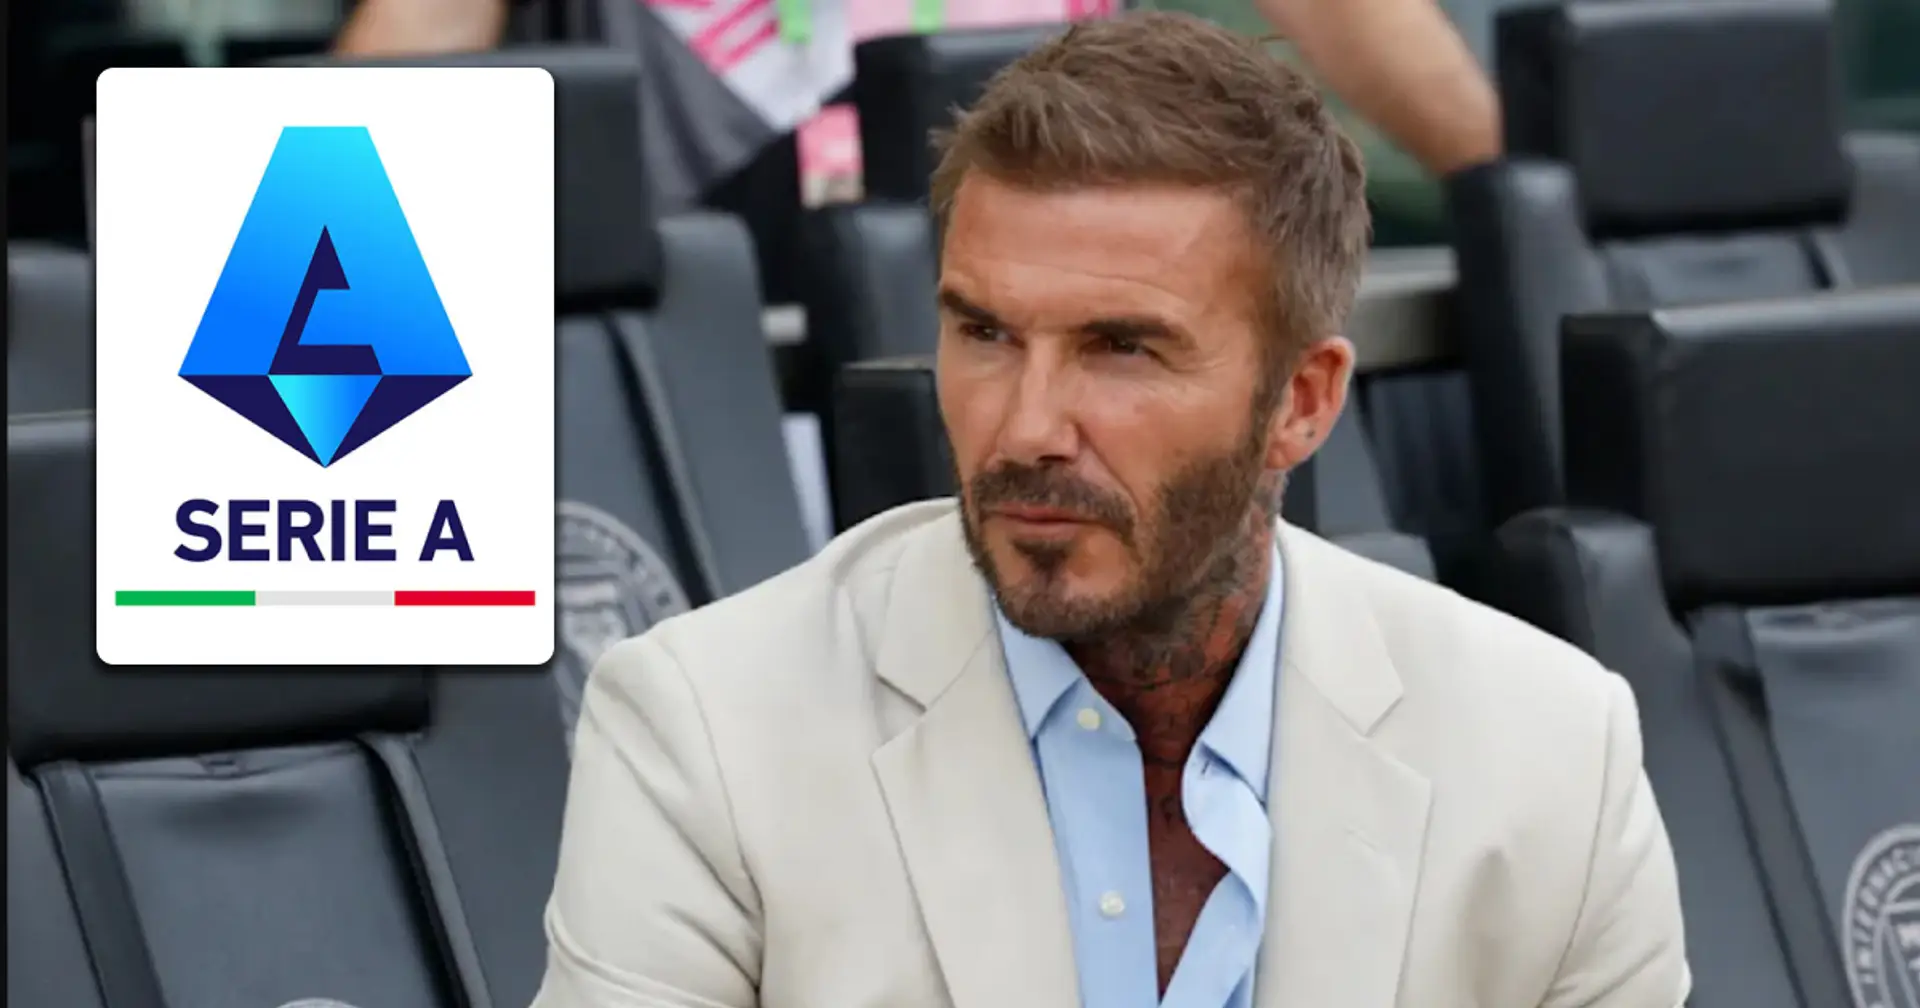 La "Legge David Beckham" potrebbe distruggere alcuni club in Italia